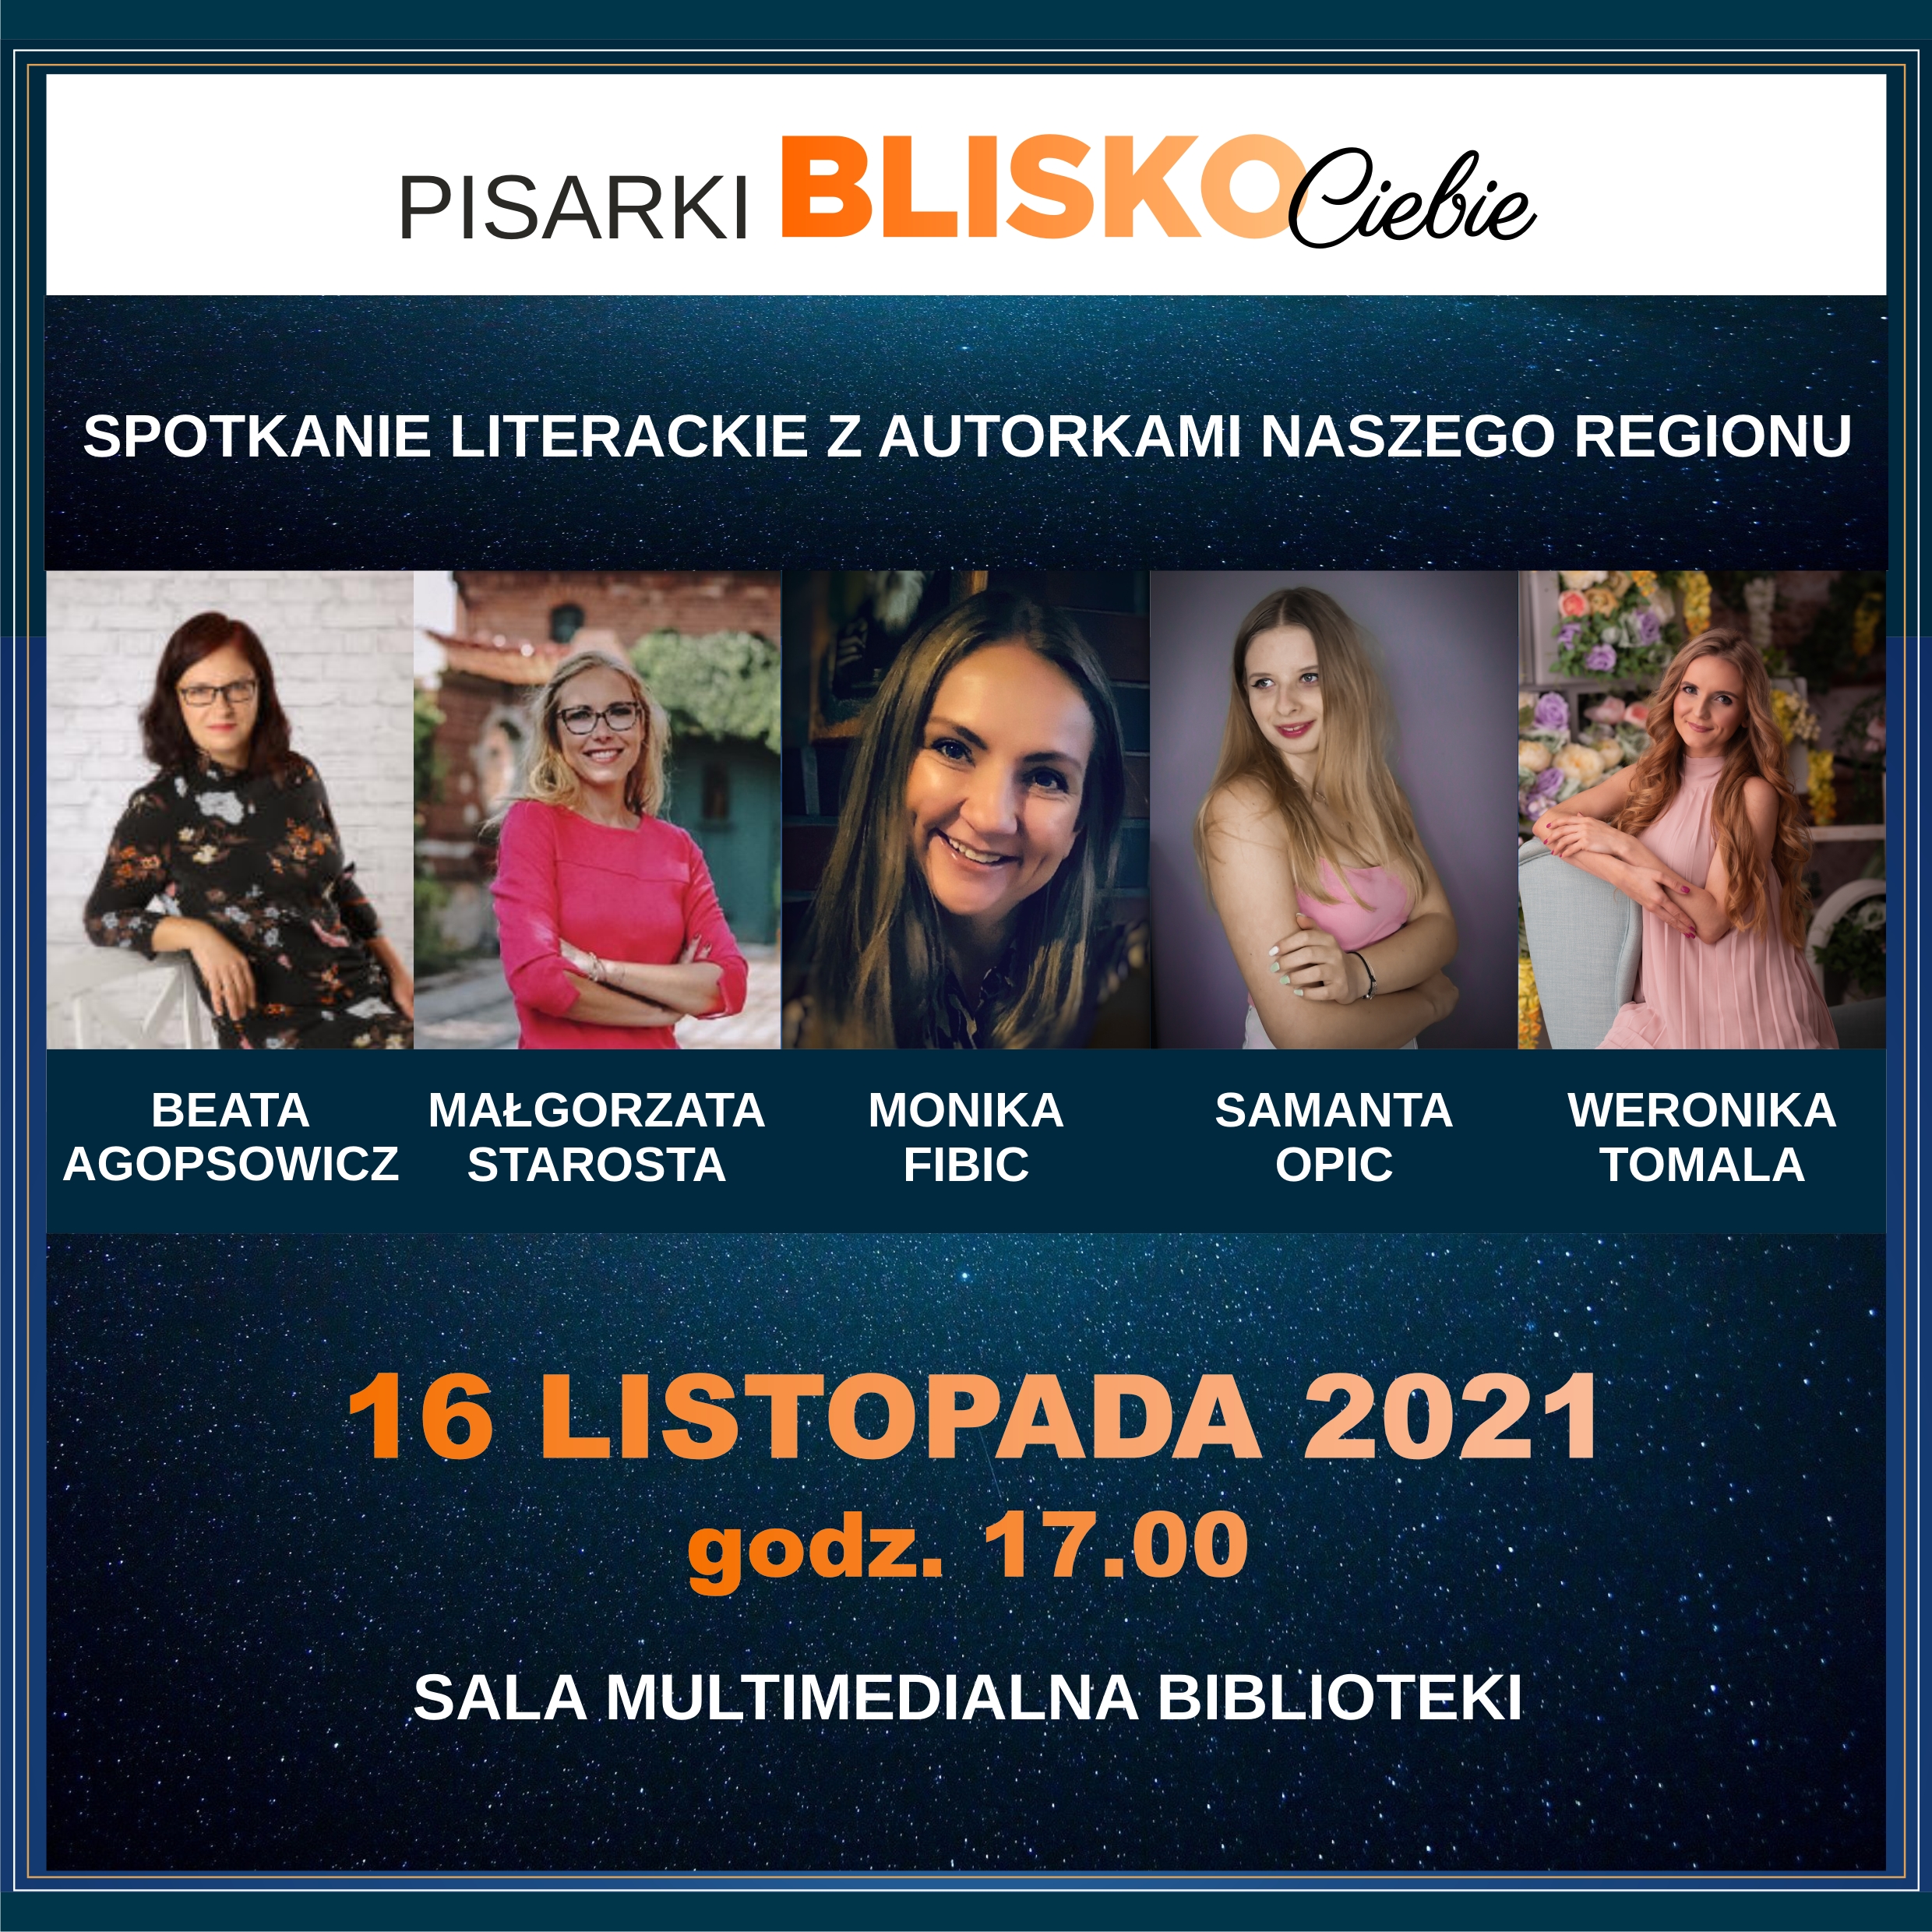 Pisarki BLISKO Ciebie - Spotkanie Literackie Z Autorkami Naszego Regionu - 16 Listopada 2021, Godz. 17.00